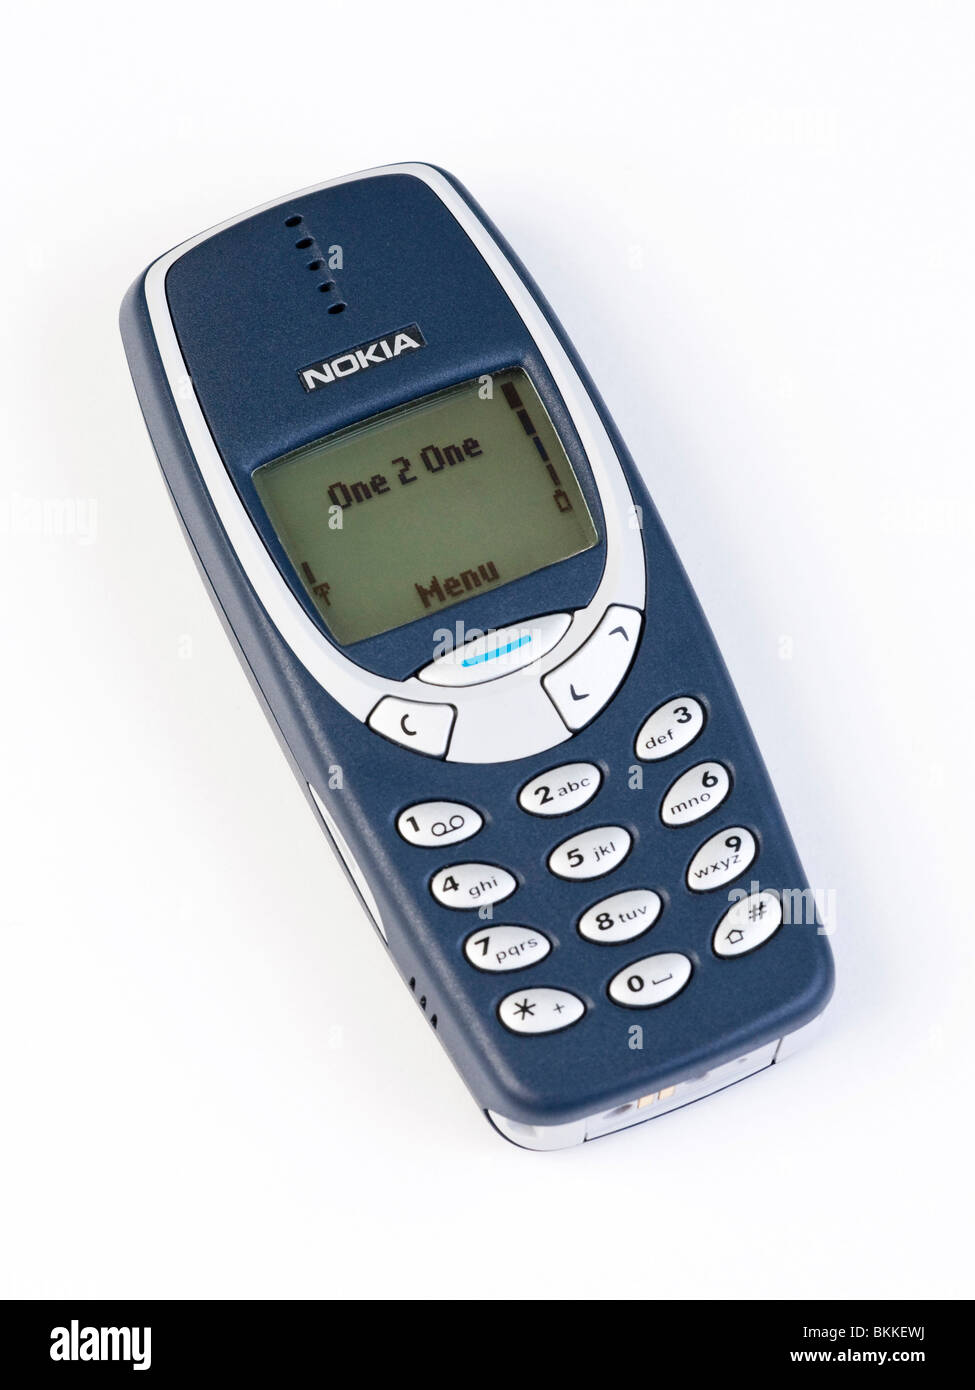 Nokia 3310 mobile phone now obsolete Stock Photo